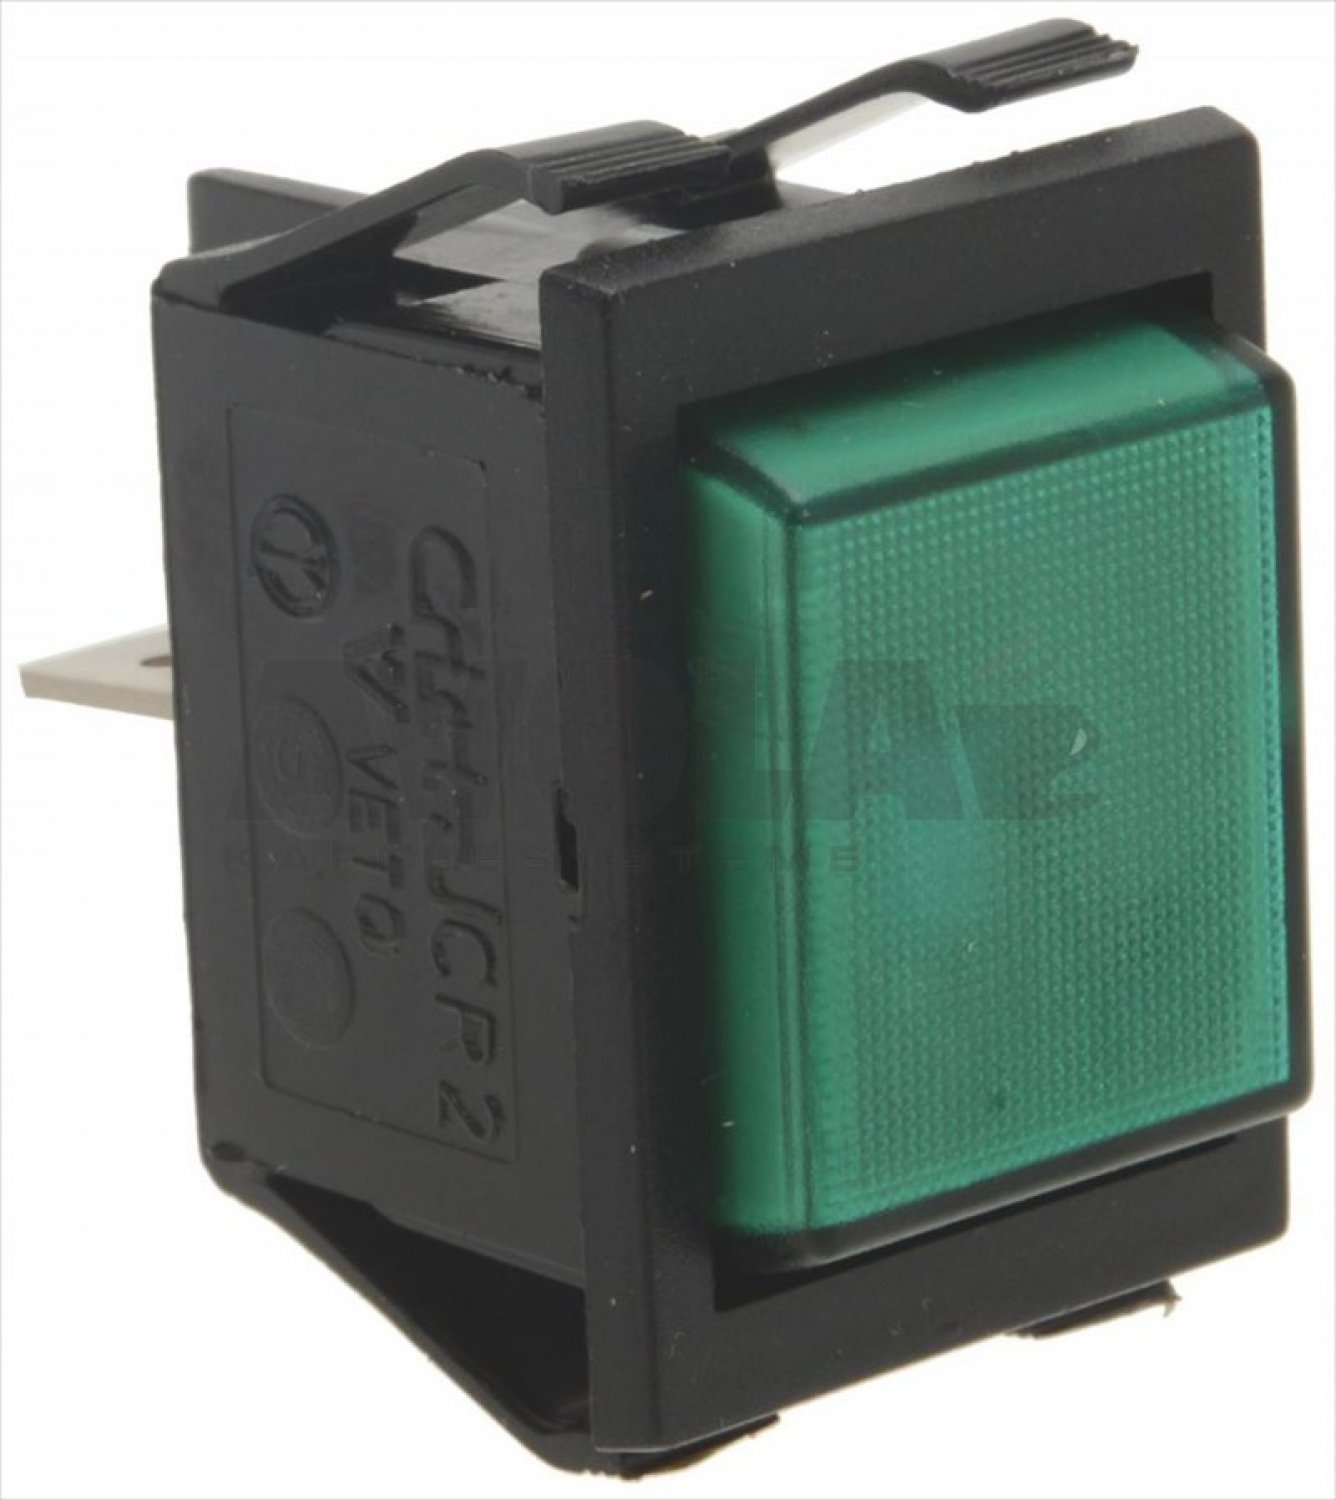 Signalleuchte Grün Signallampe Grün 220VAC  Elektronik und Technik bei  Henri Elektronik günstig bestellen